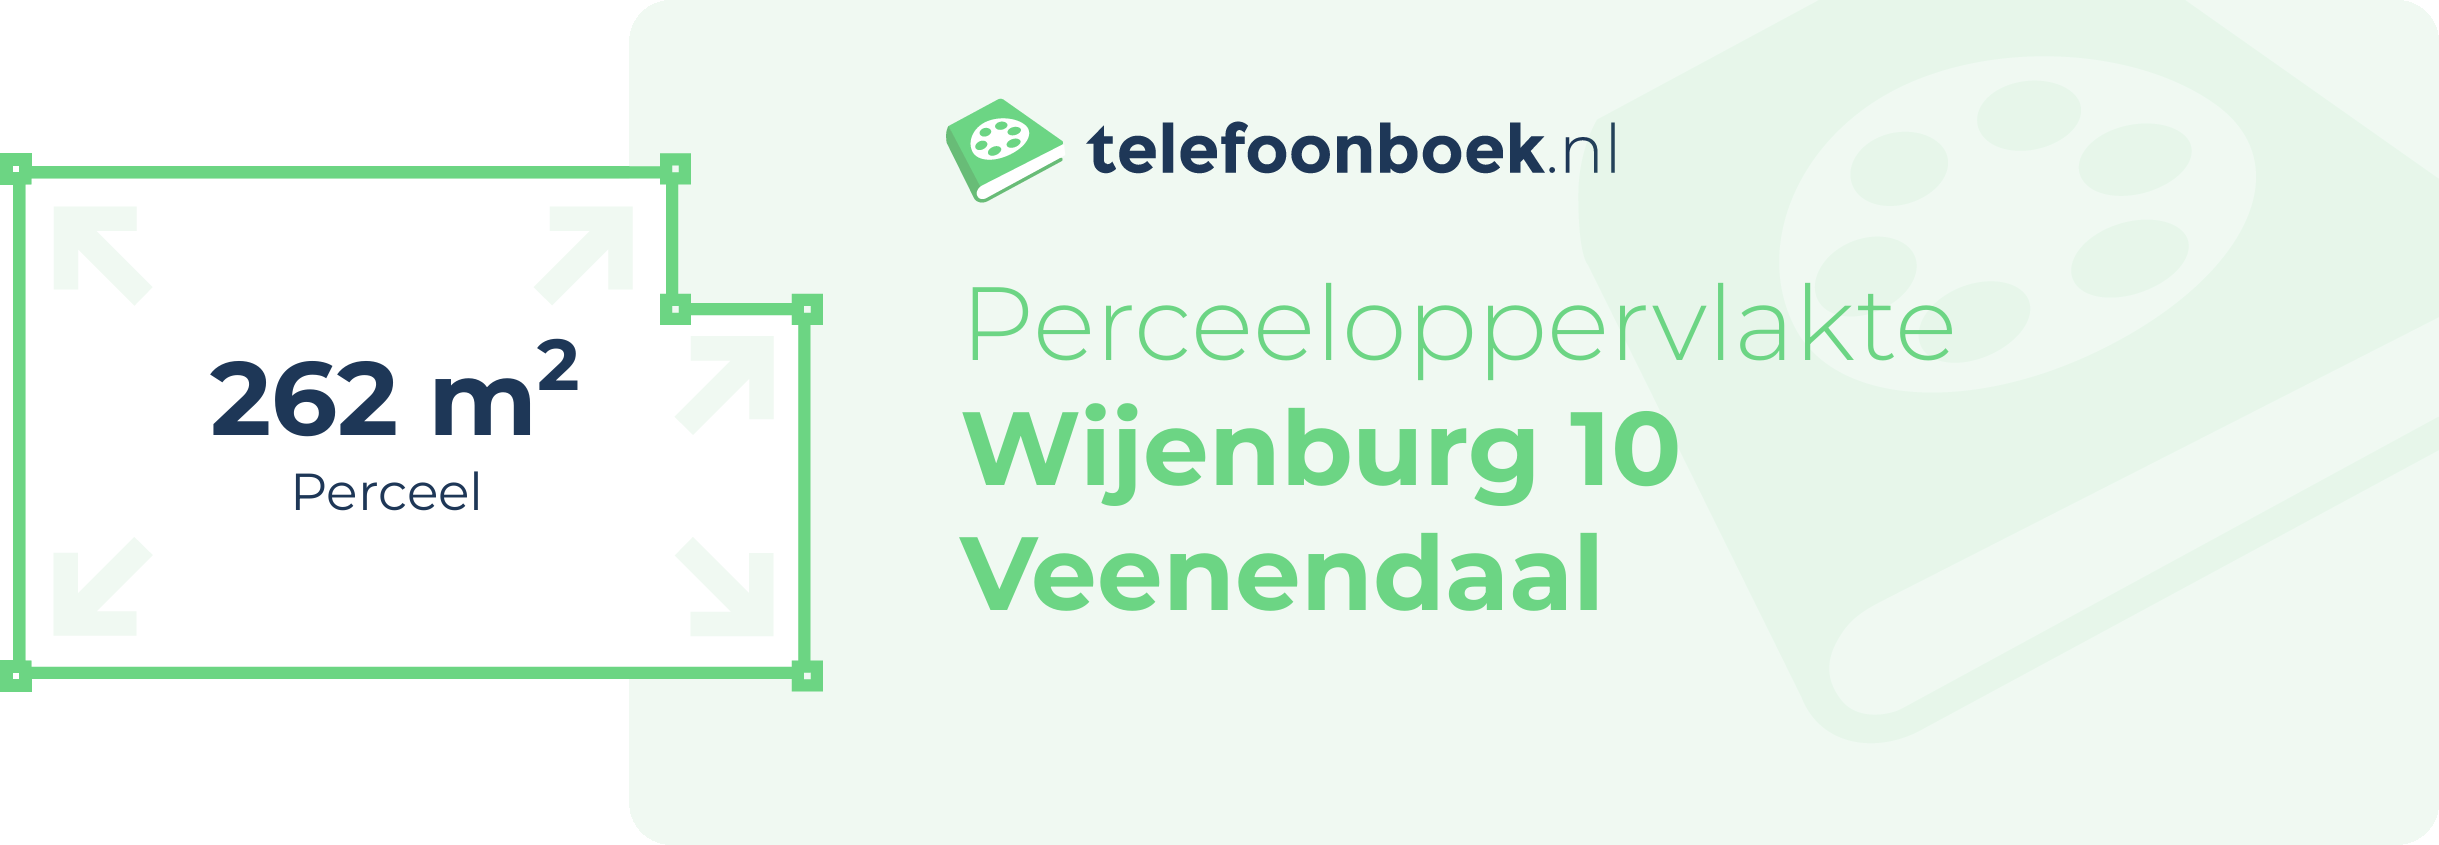 Perceeloppervlakte Wijenburg 10 Veenendaal